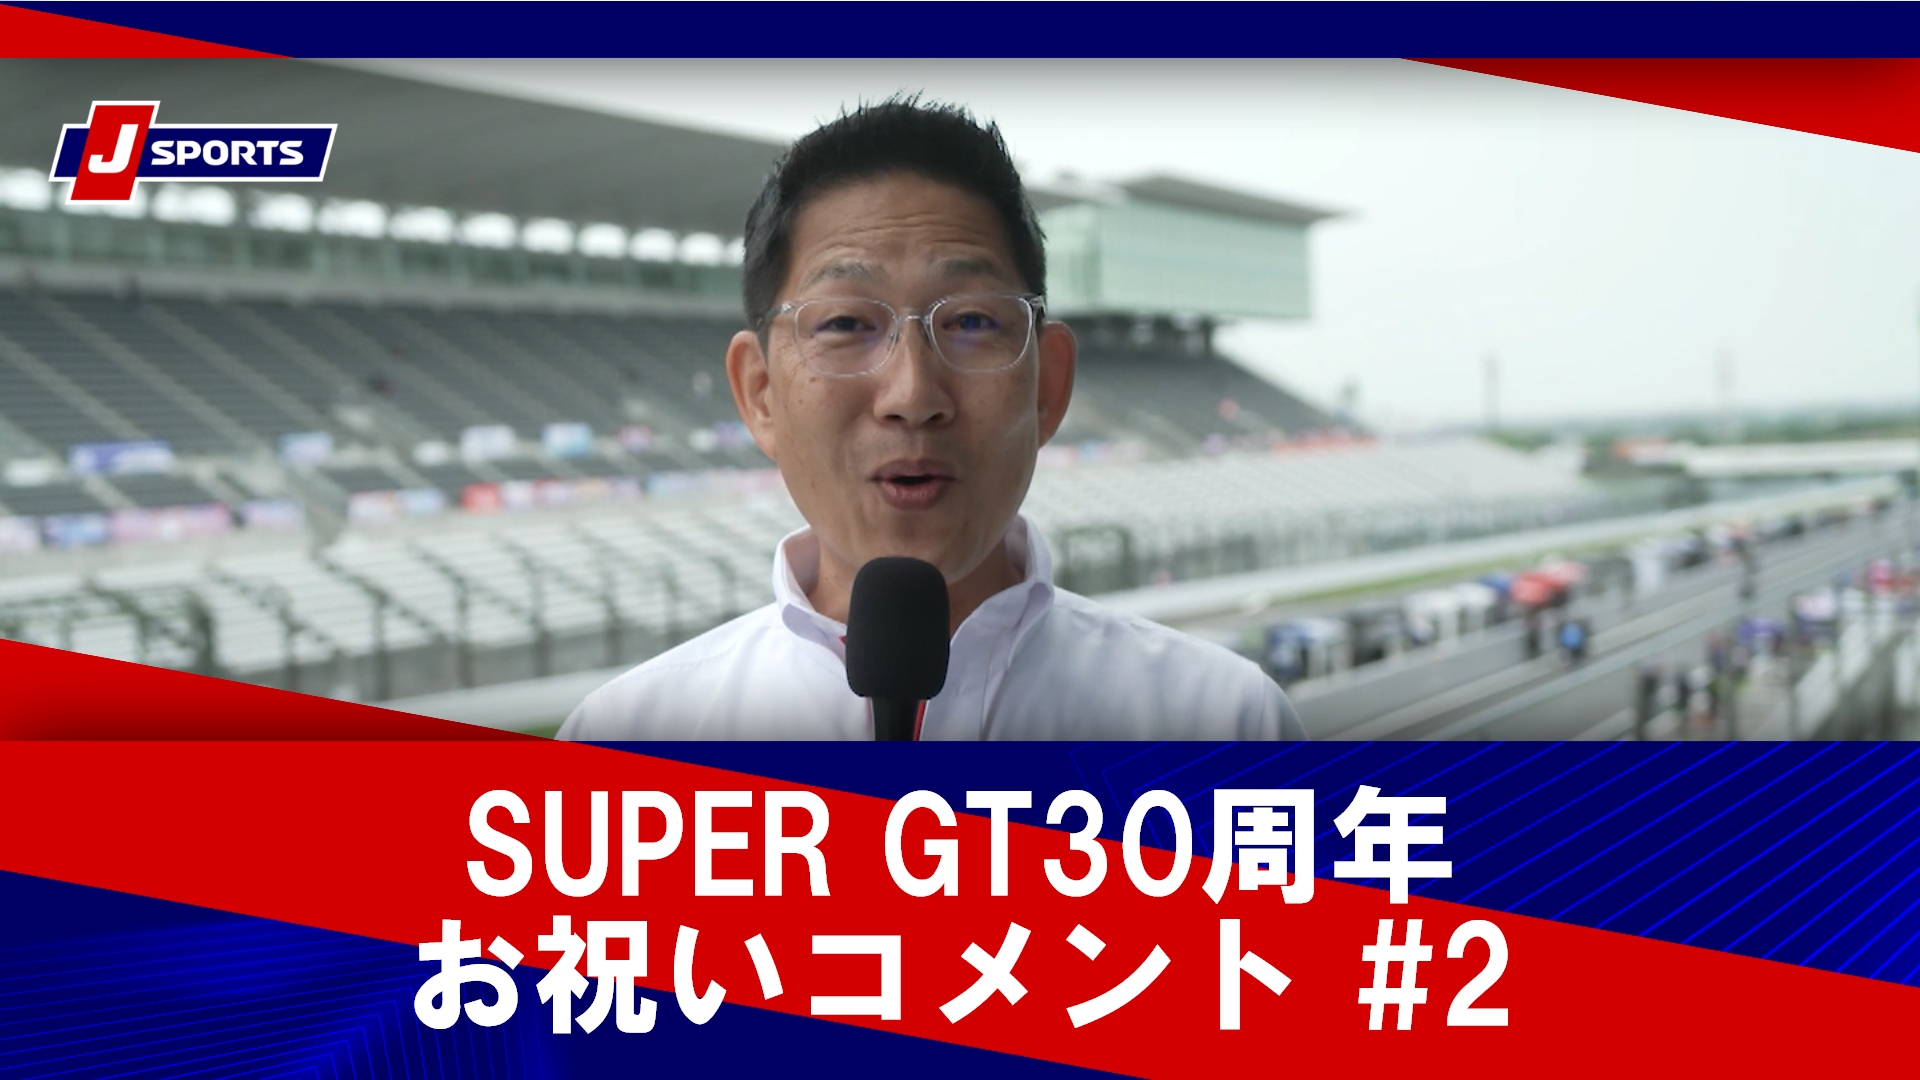 SUPER GT30周年お祝いコメント #2 ピエール北川、影山正彦、坪井翔、脇阪寿一、関谷正徳、星野一義